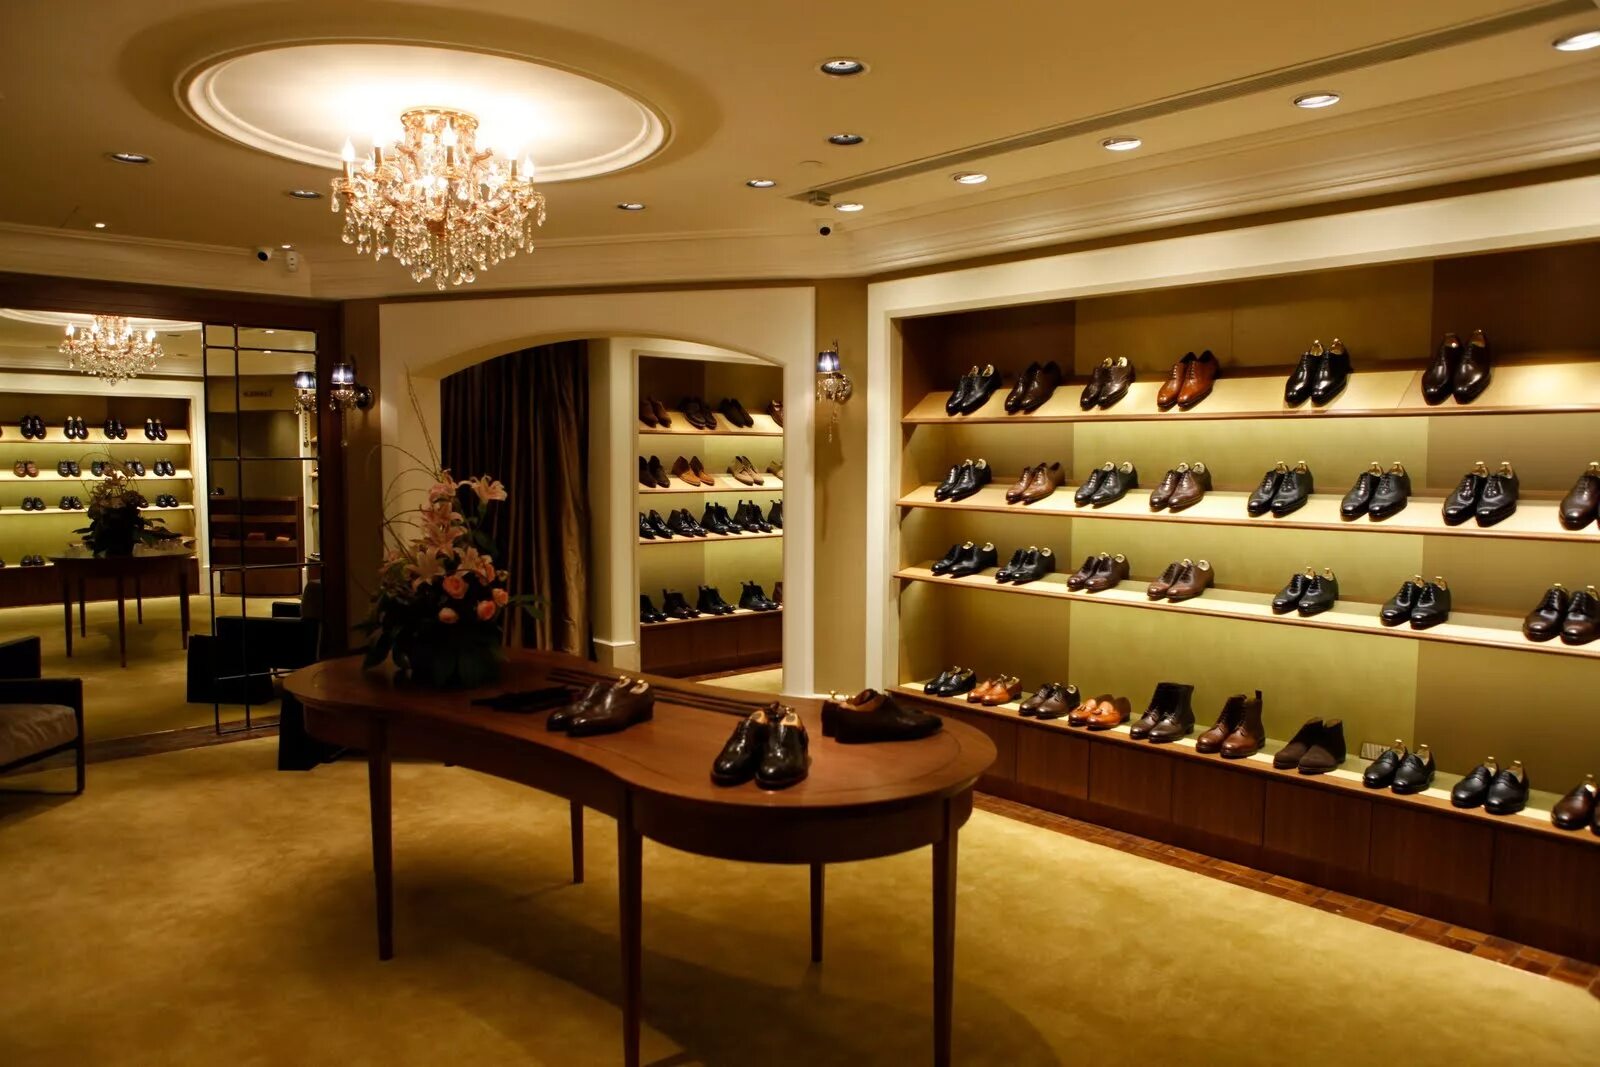 Магазин обуви. Бутик обуви. Элитный магазин. Красивый магазин обуви. Обувь эксклюзивных размеров загородный